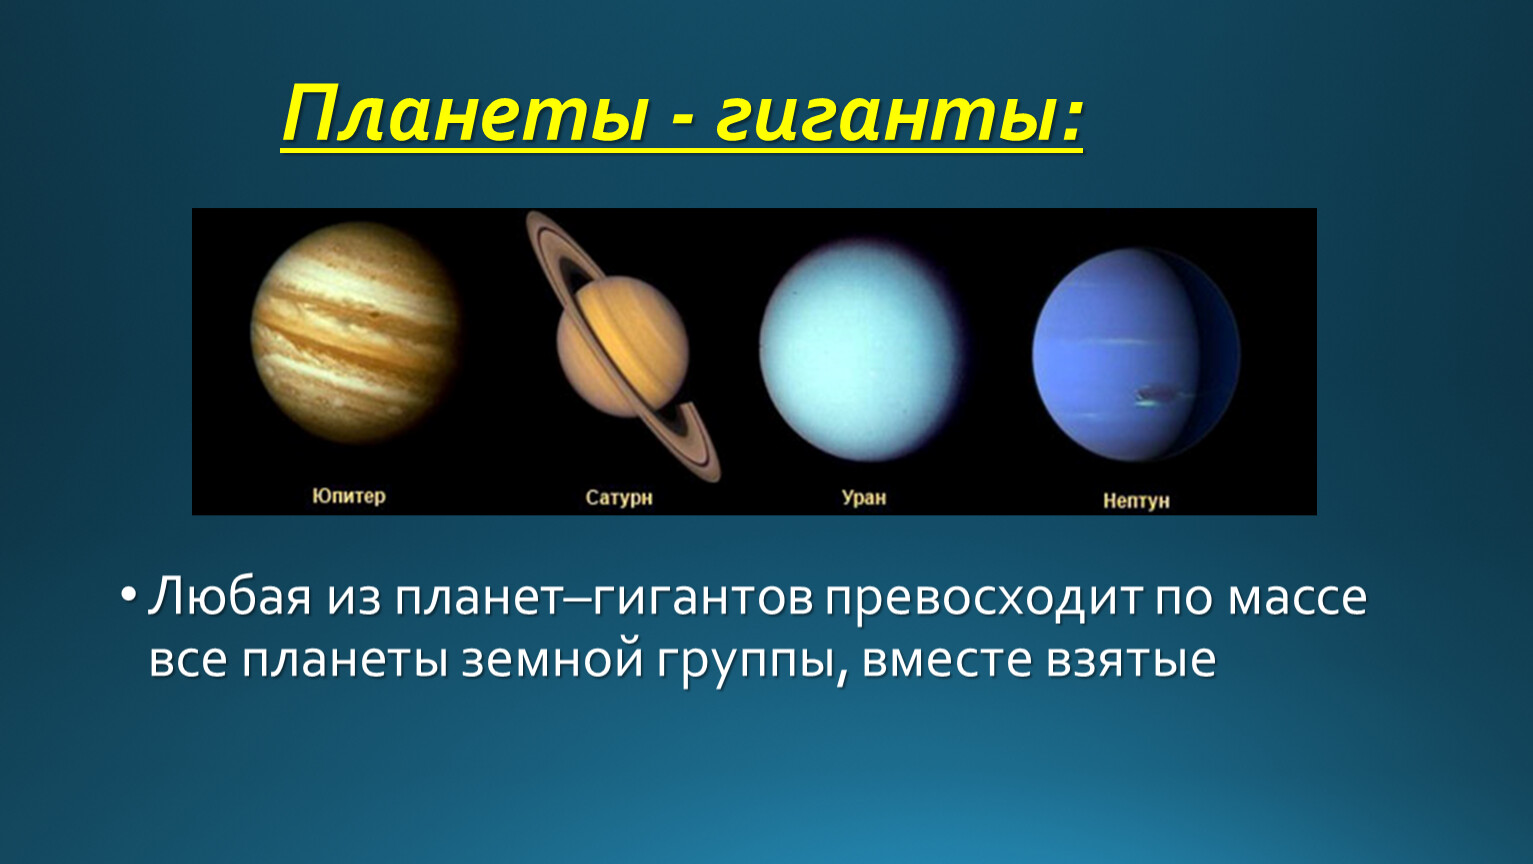 Земной группы относят. Планеты гигантпланеты земеой группы. Юпитер Сатурн Уран Нептун. Газовые гиганты Сатурн Уран Нептун Юпитер. Планеты солнечной системы планеты земной группы планеты гиганты.